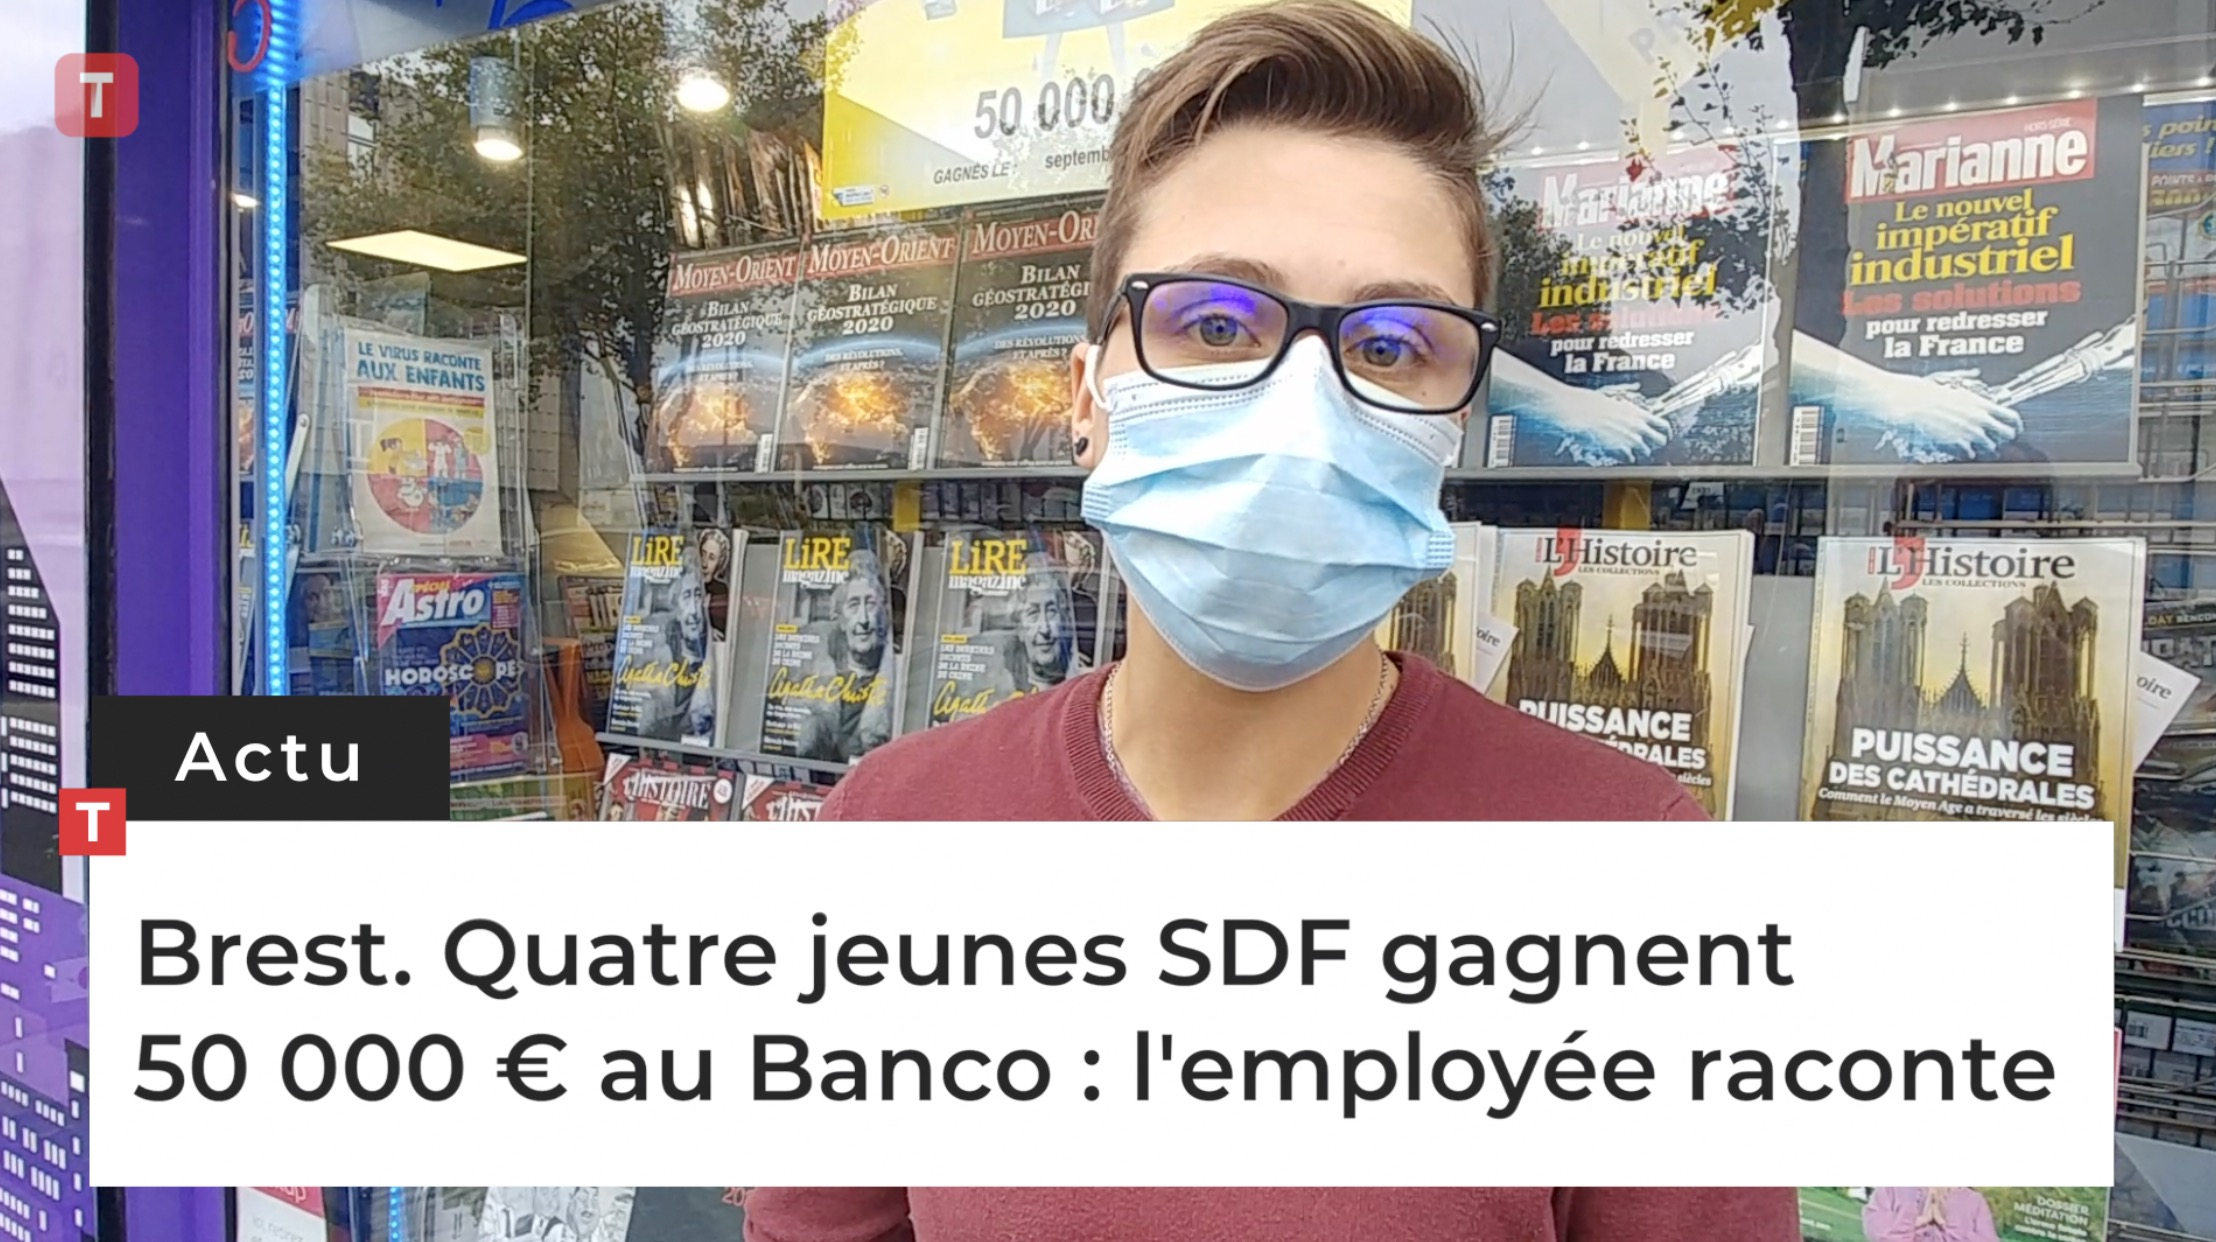 Brest. Quatre jeunes SDF gagnent 50 000 € au Banco : la serveuse raconte (Le Télégramme)